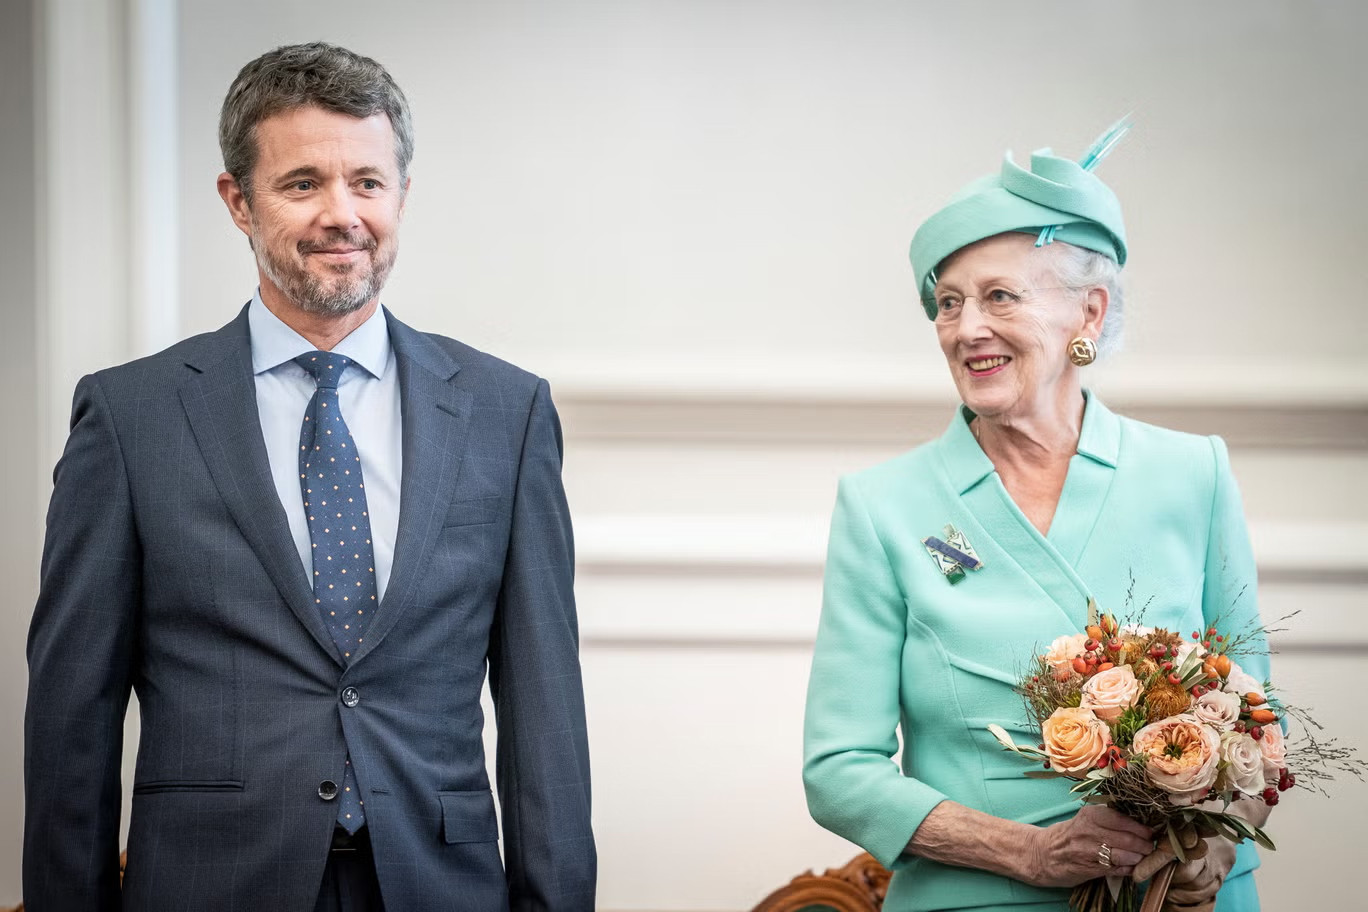 Nữ hoàng Margrethe II (phải) đã tuyên bố sẽ truyền ngôi lại cho Thái tử Frederik. Ảnh: Sky News